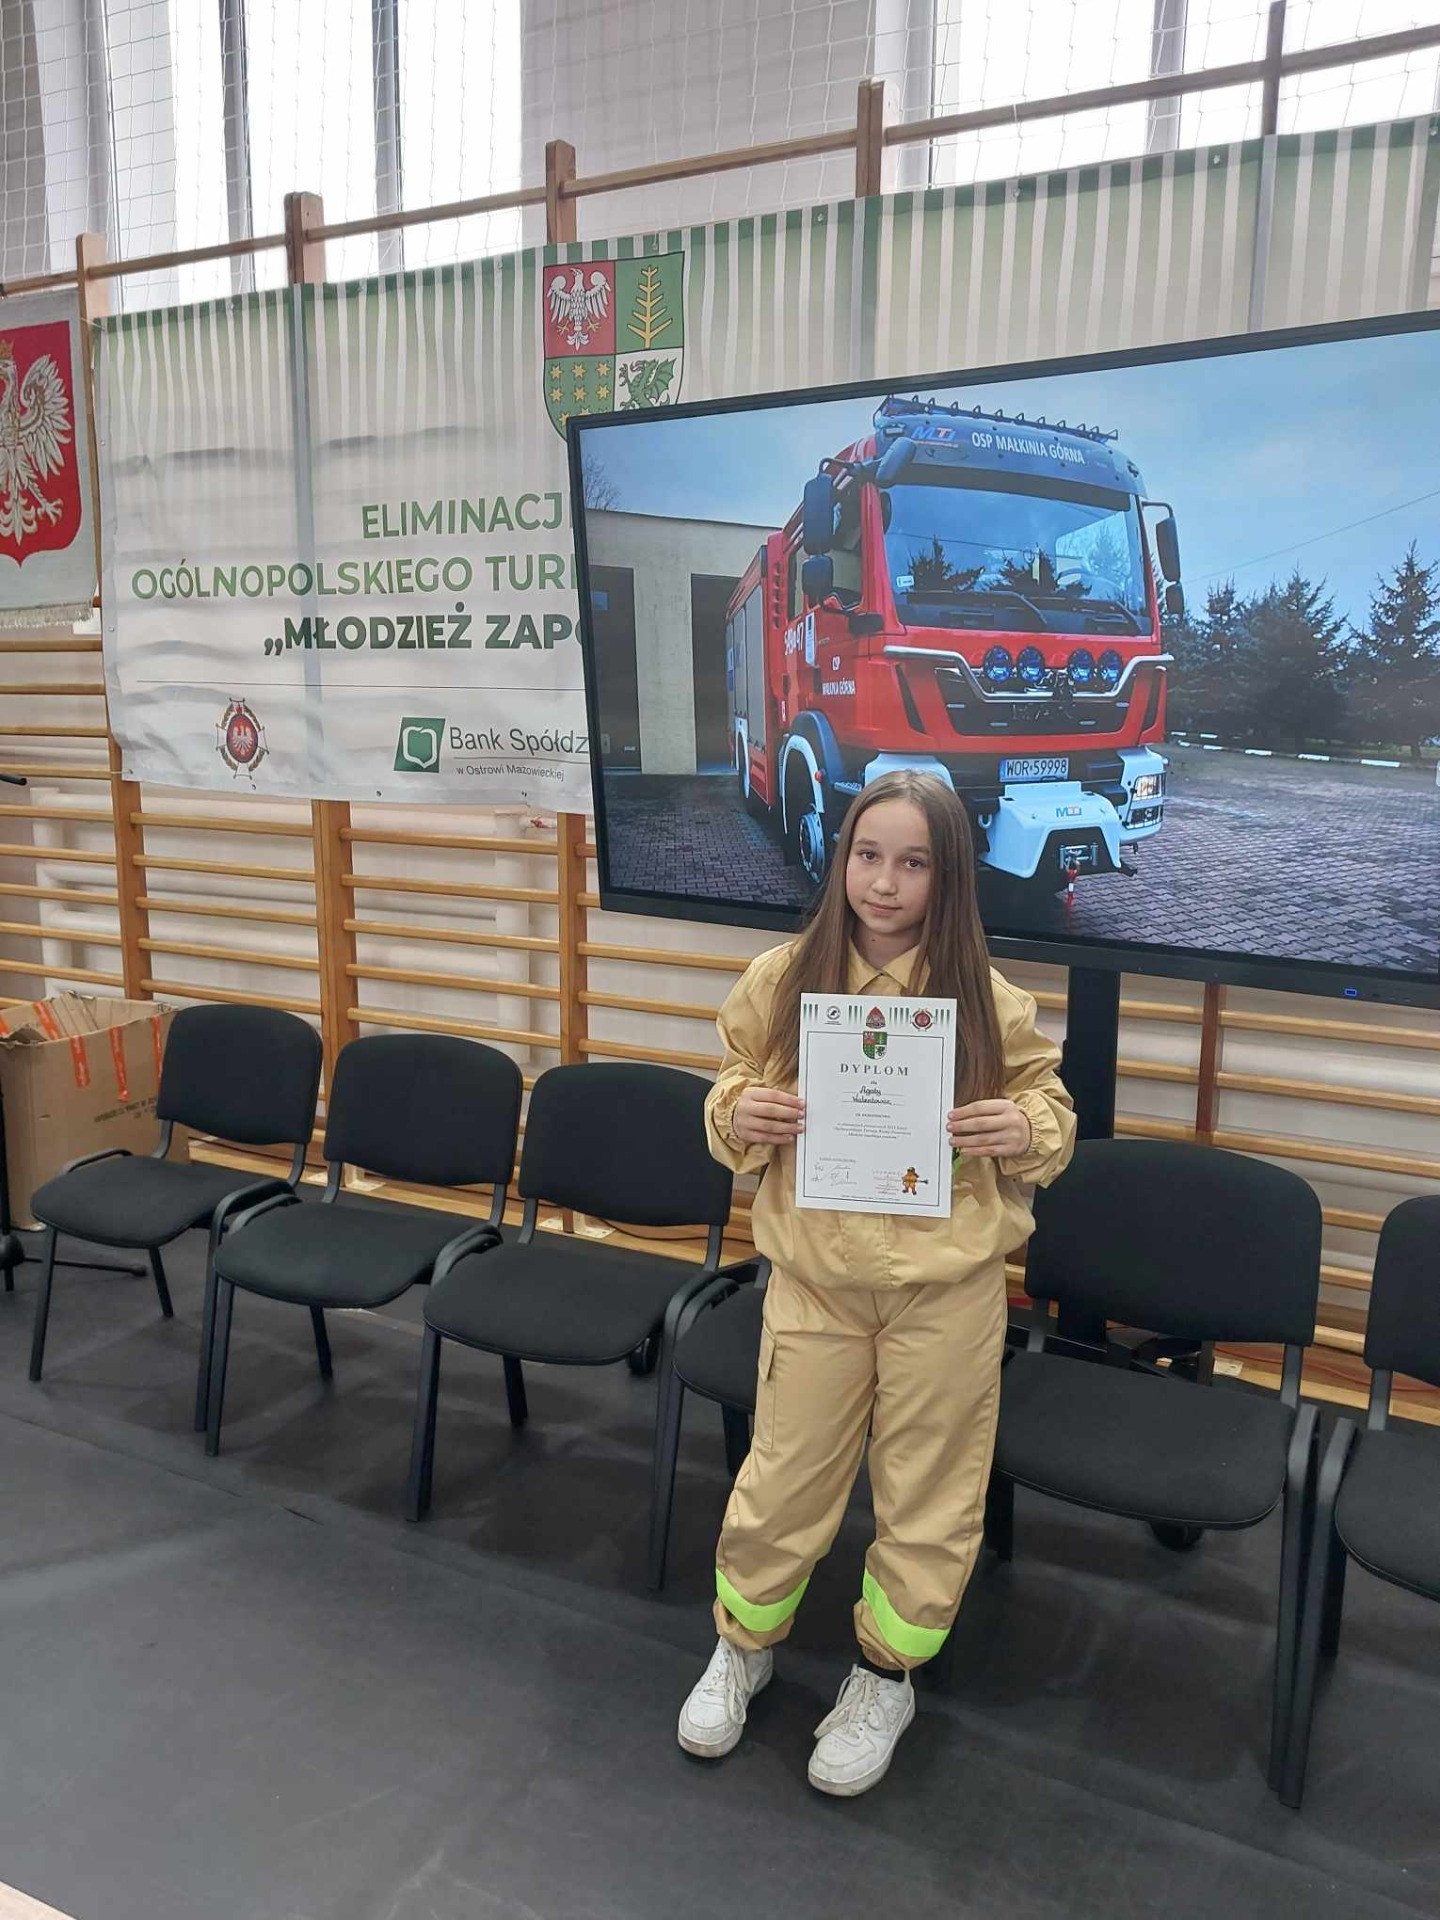 Agata z dyplomem w ręku , a w tle obraz z wozem strażackim.